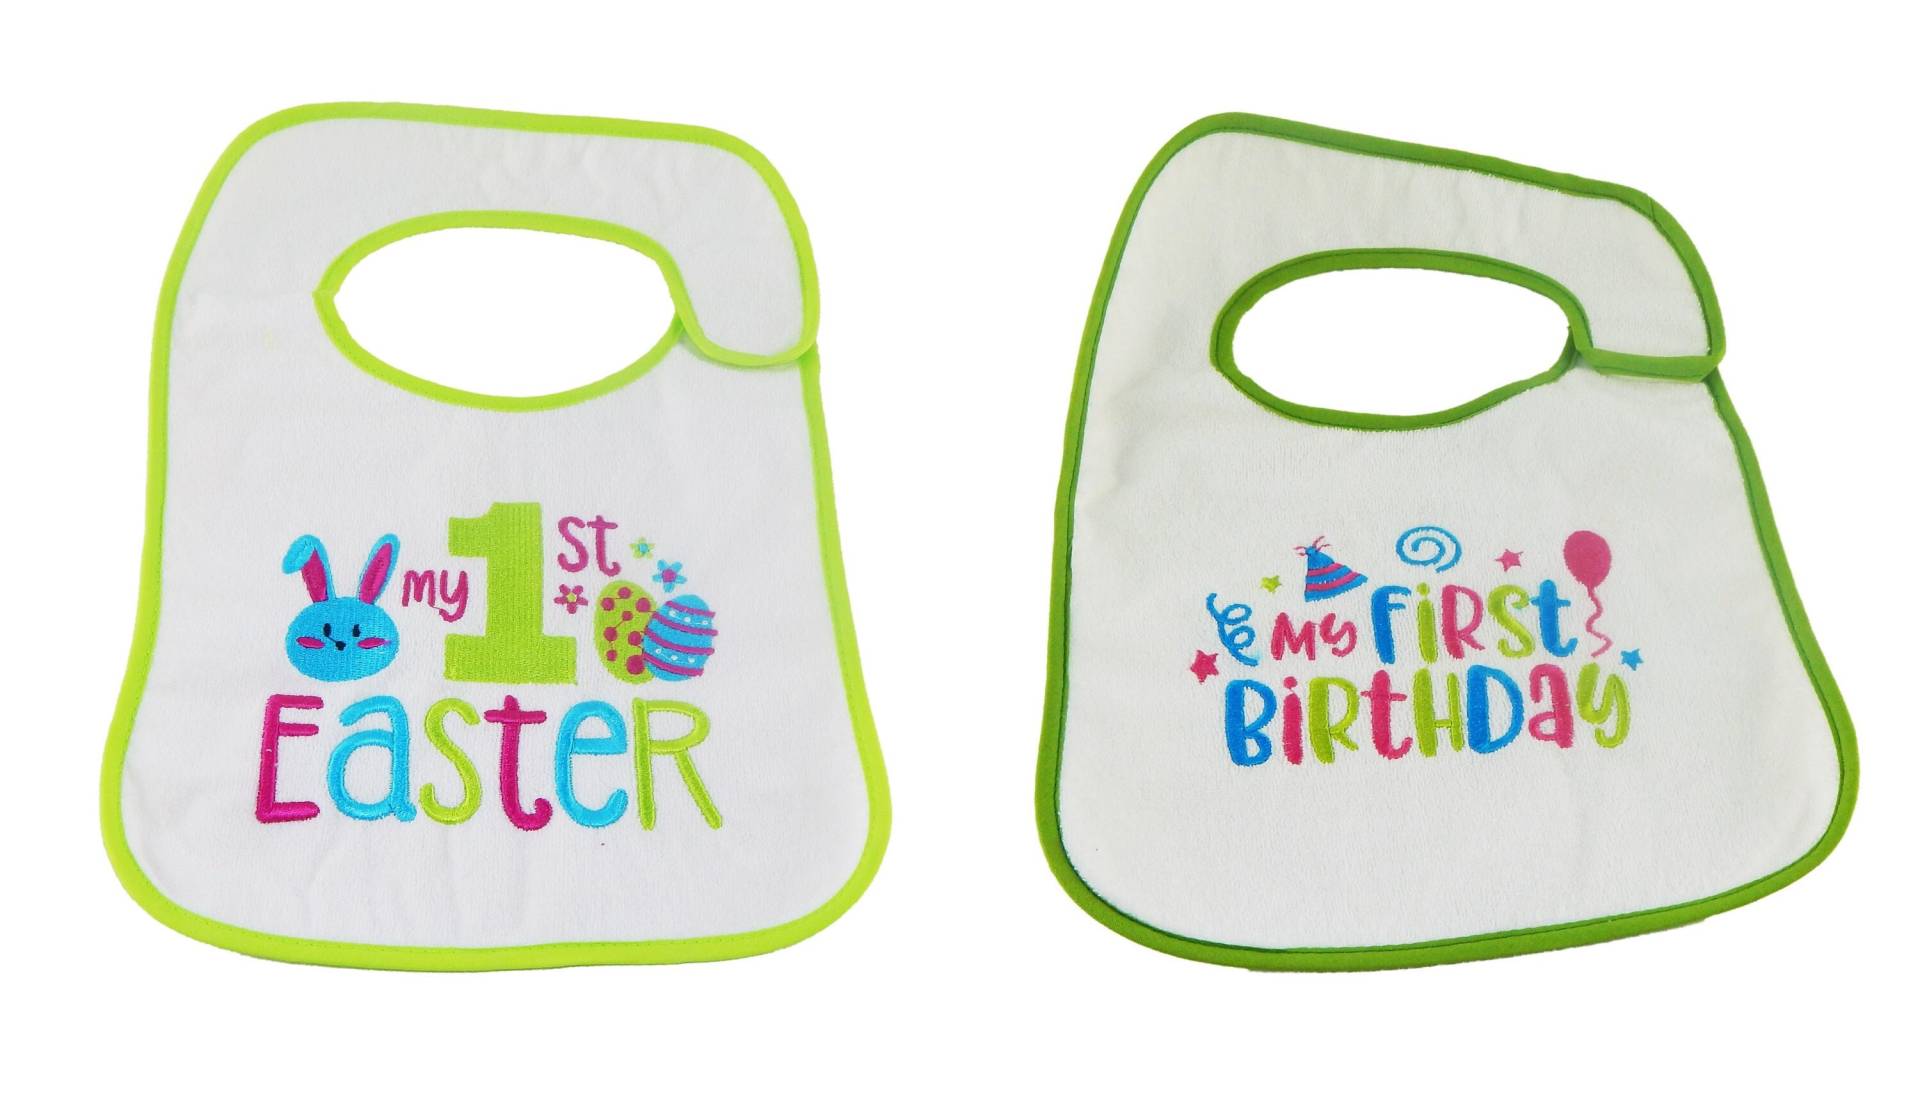 Baby Es First Easter & Birthday Bib Set - 2Pk von Etsy - HelloBabyWonder